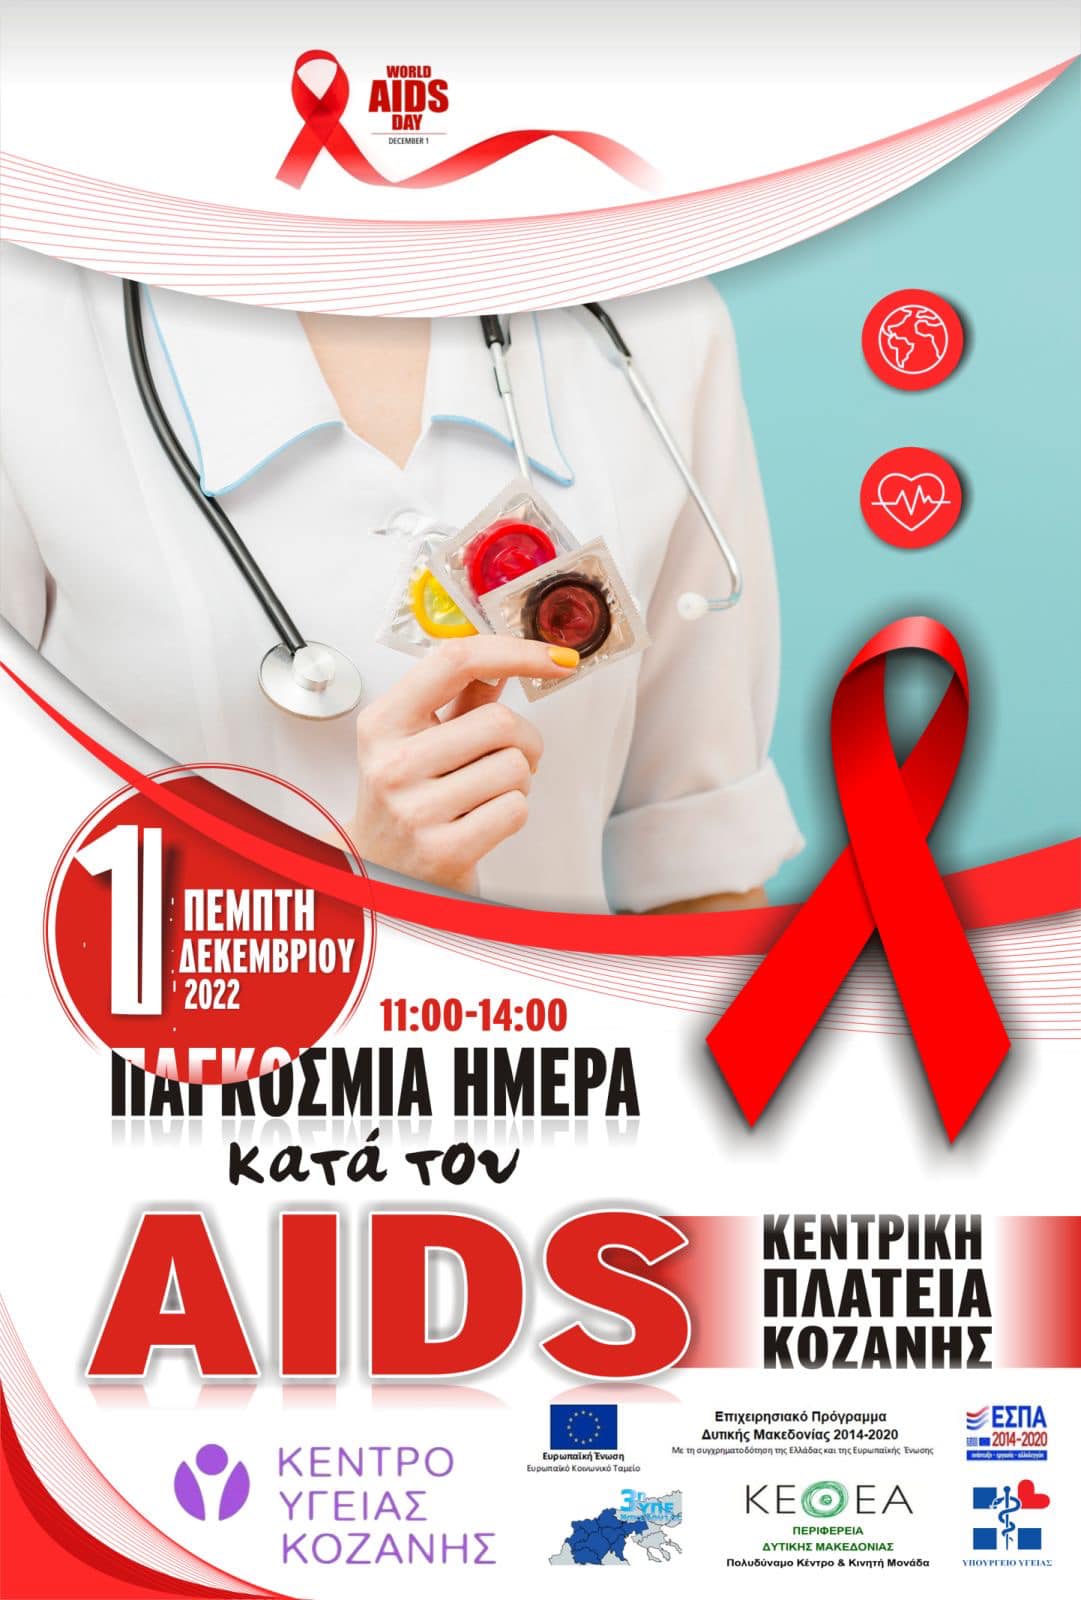 Eordaialive.com - Τα Νέα της Πτολεμαΐδας, Εορδαίας, Κοζάνης Κοζάνη: με αφορμή την παγκόσμια ημέρα κατά του AIDS